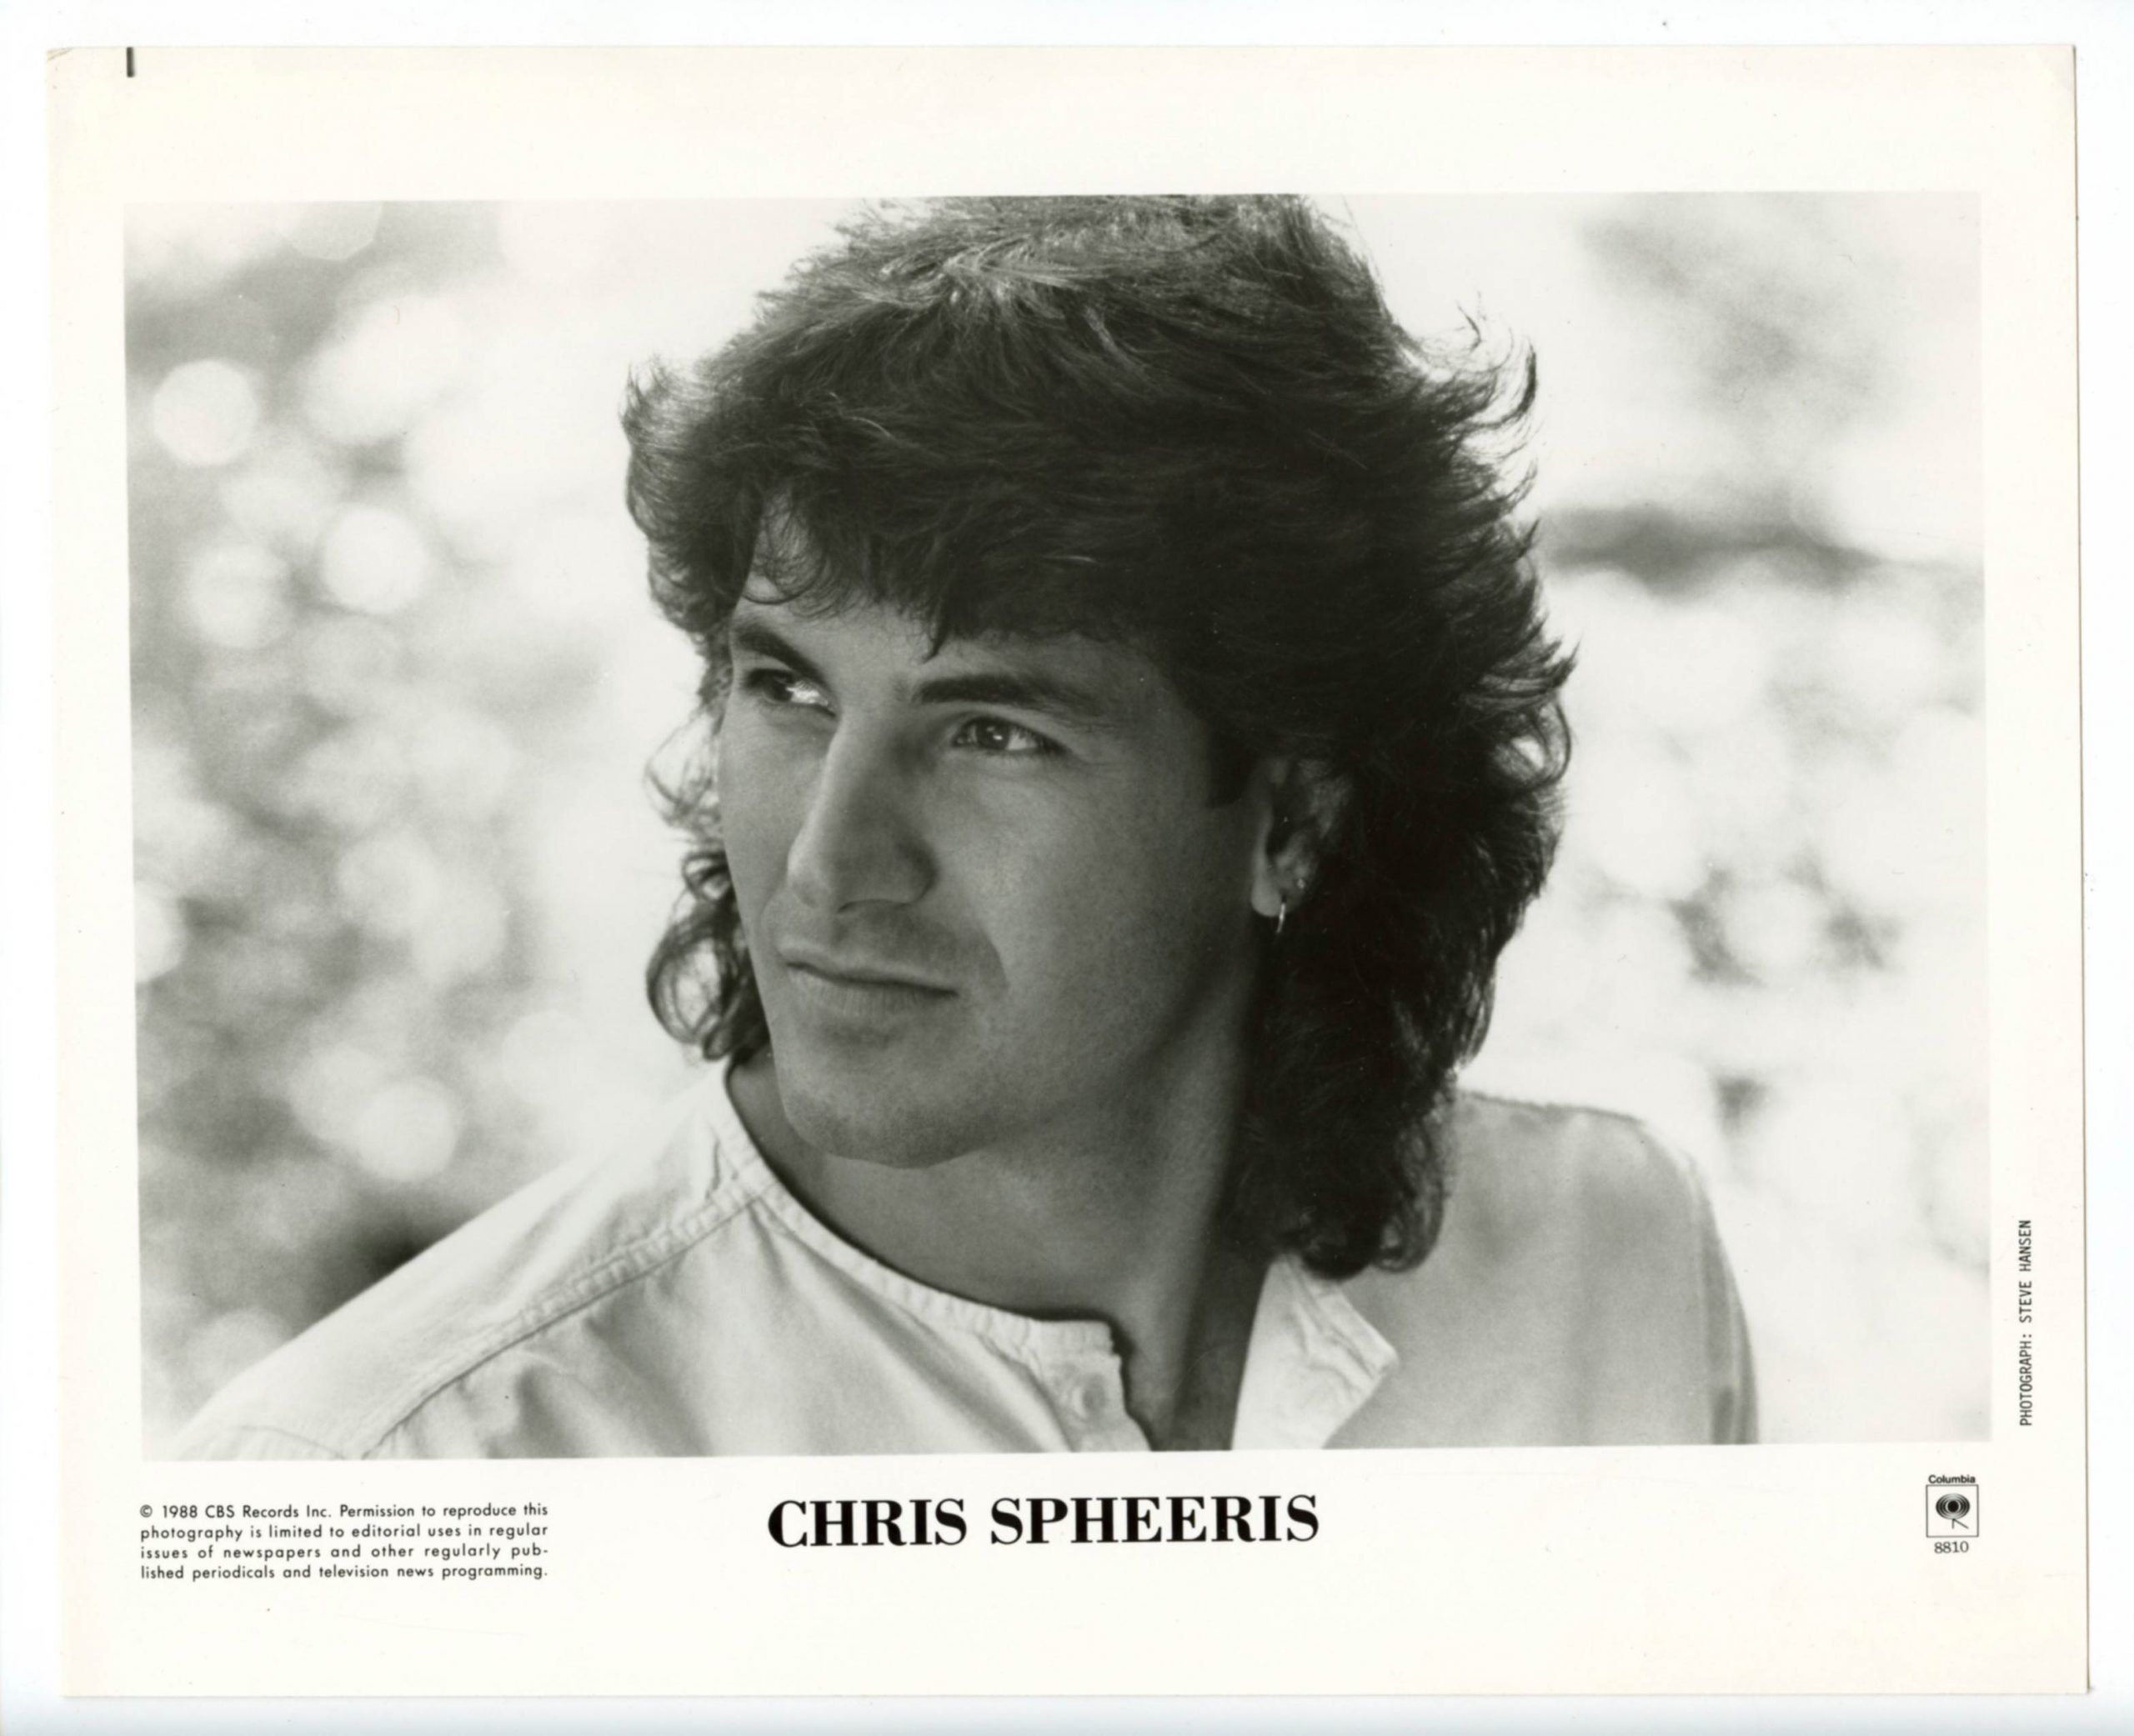 Chris Spheeris Photo 1980s Columbia Records